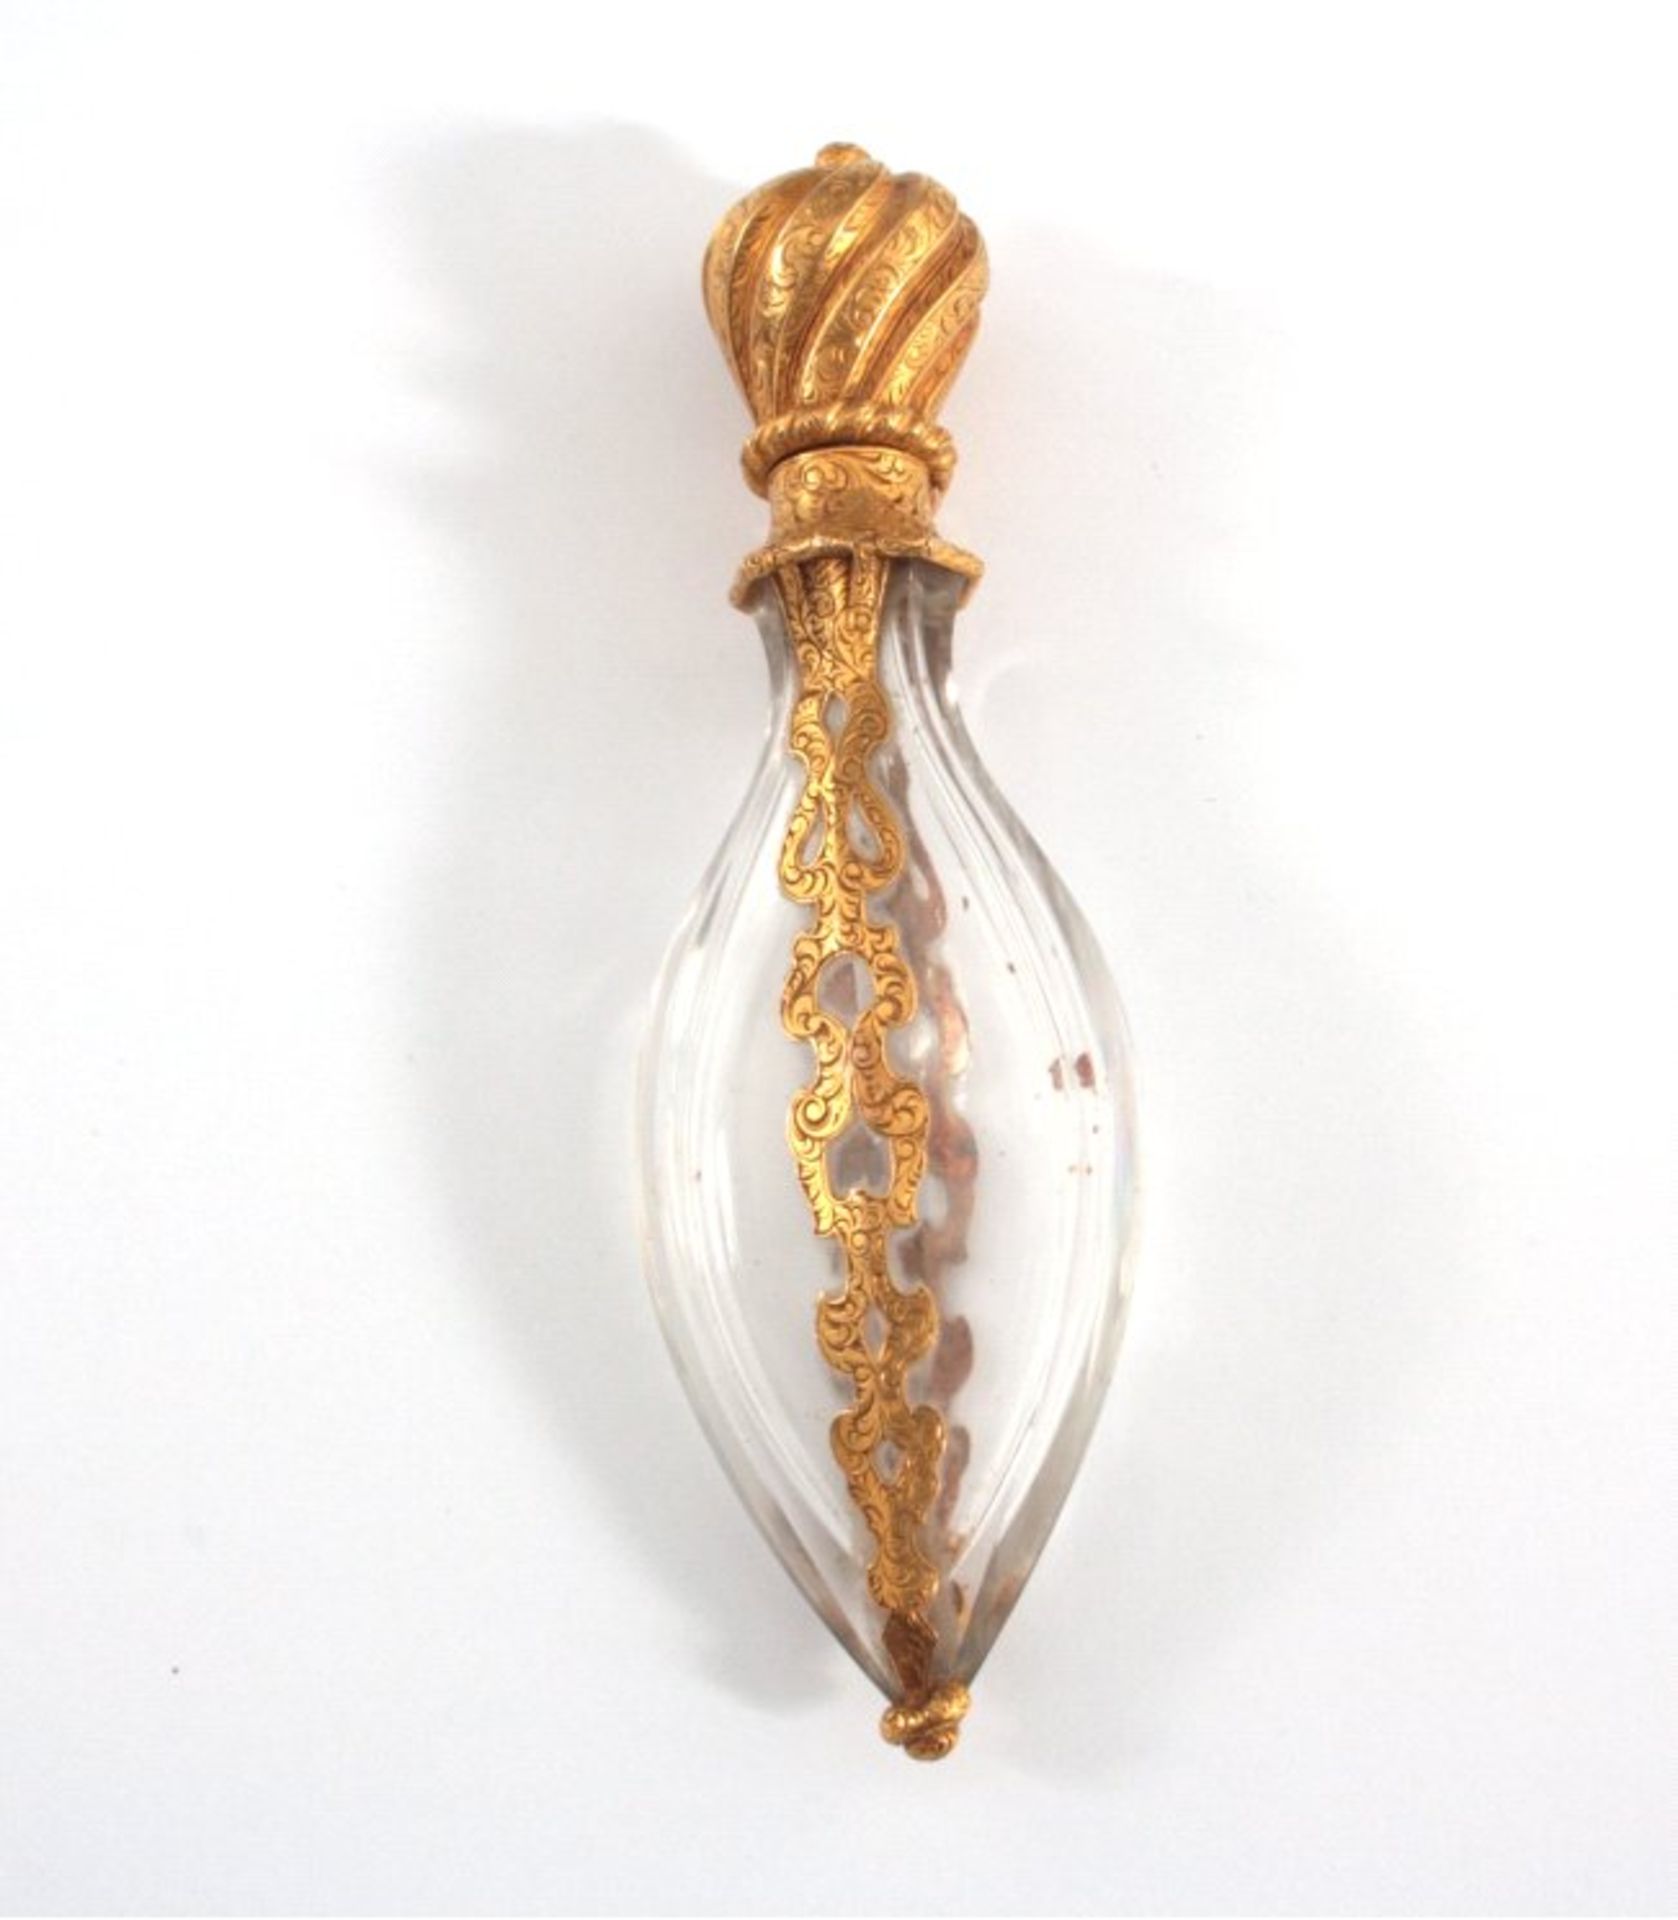 Parfüm-Flacon 19. Jh.Geschliffenes Klarglas mit Einschlüssen, Verschluß in Formeiner Krone, Montur